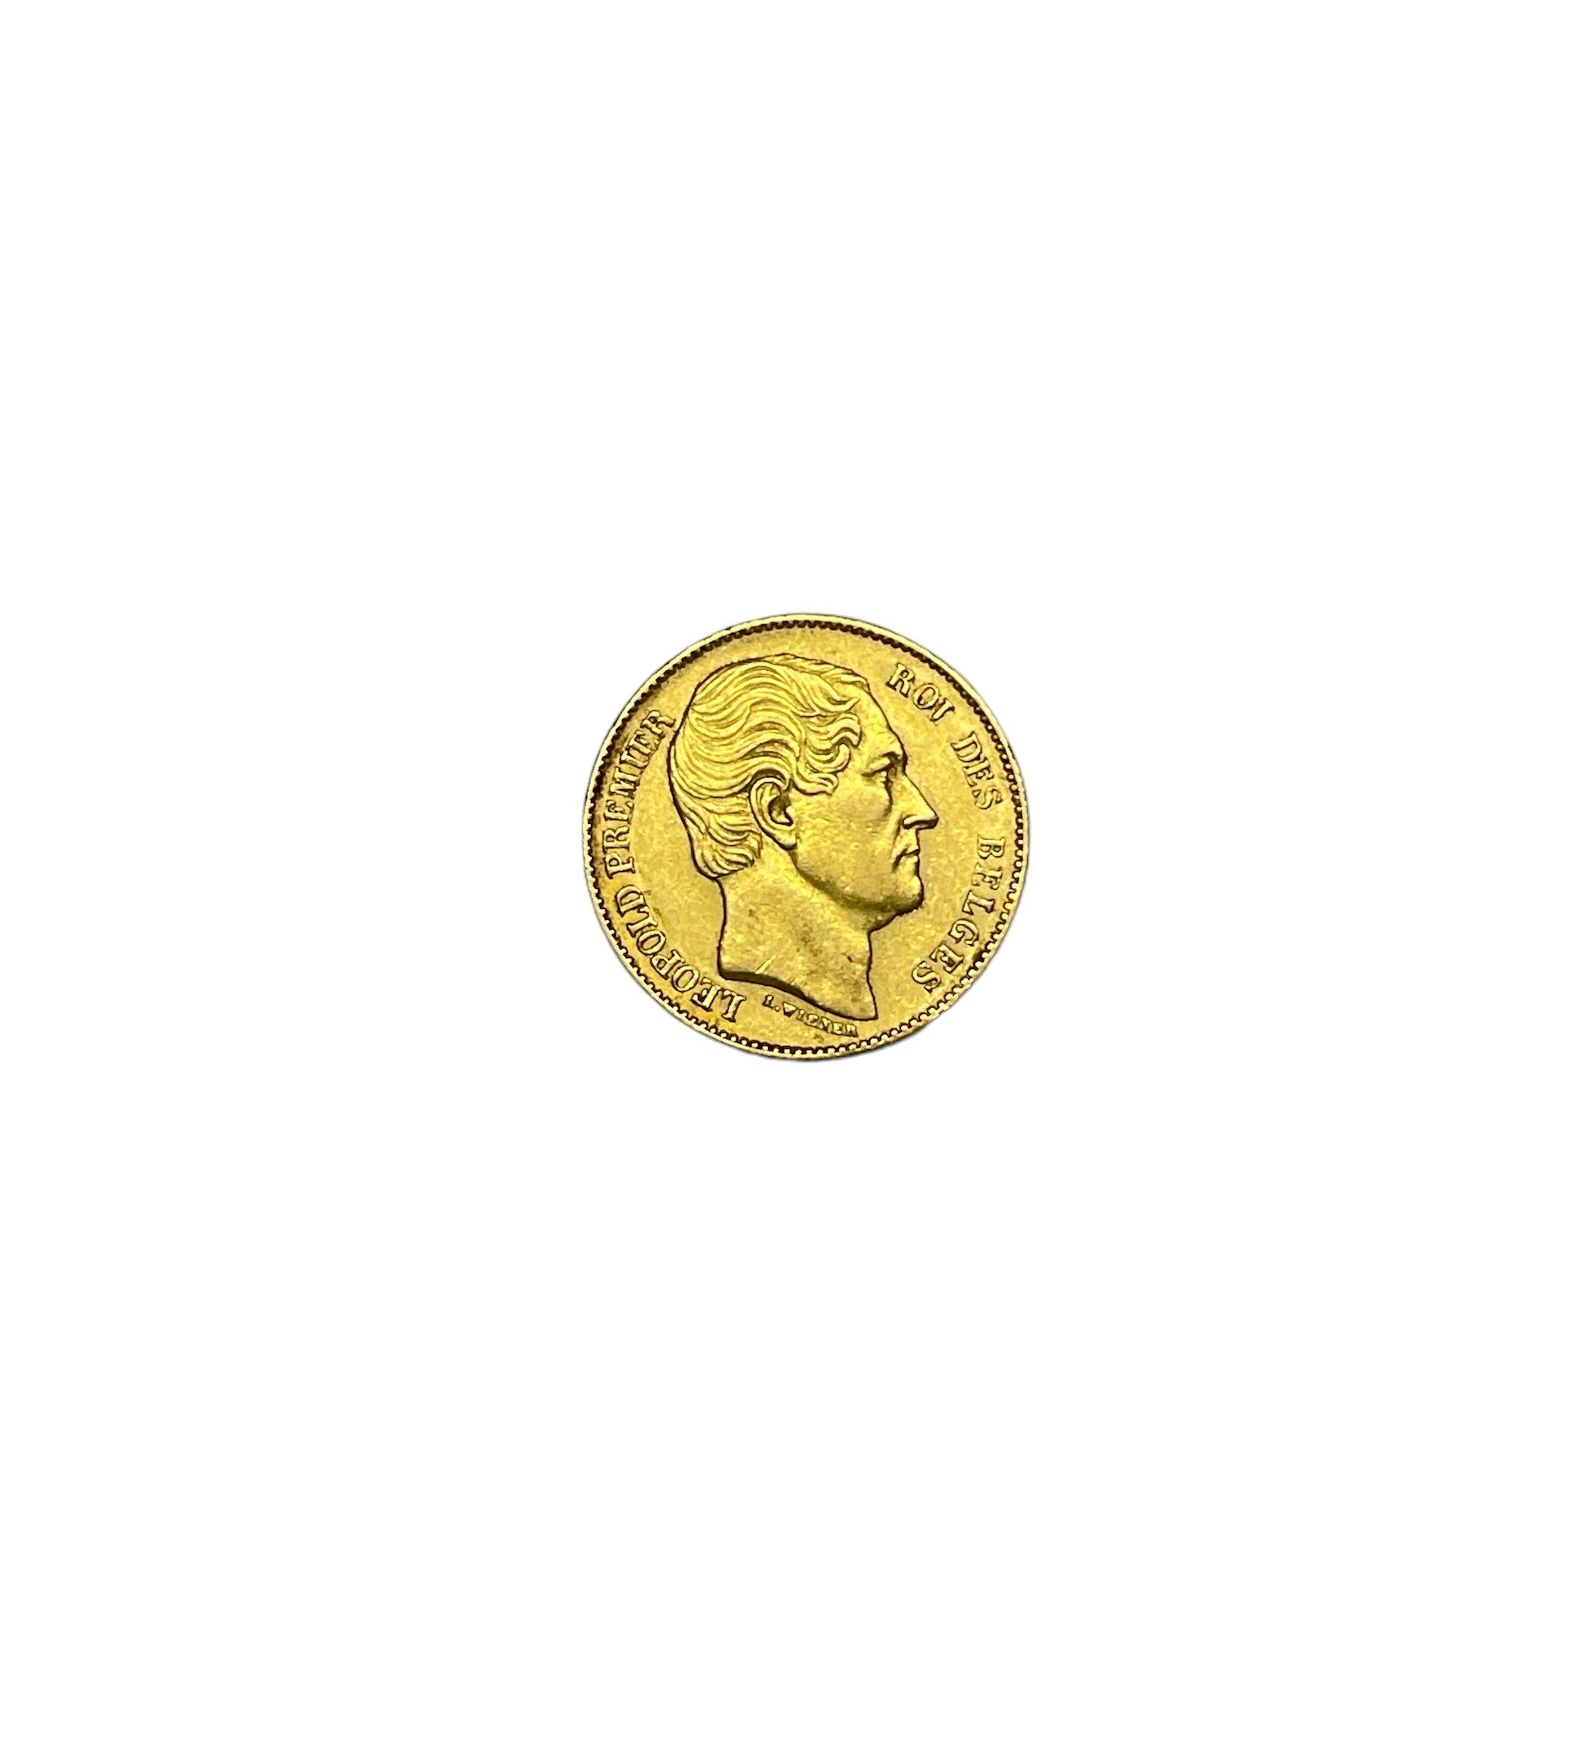 Null FRANKREICH
20 Franken Gold 1865
Gewicht: 6 g